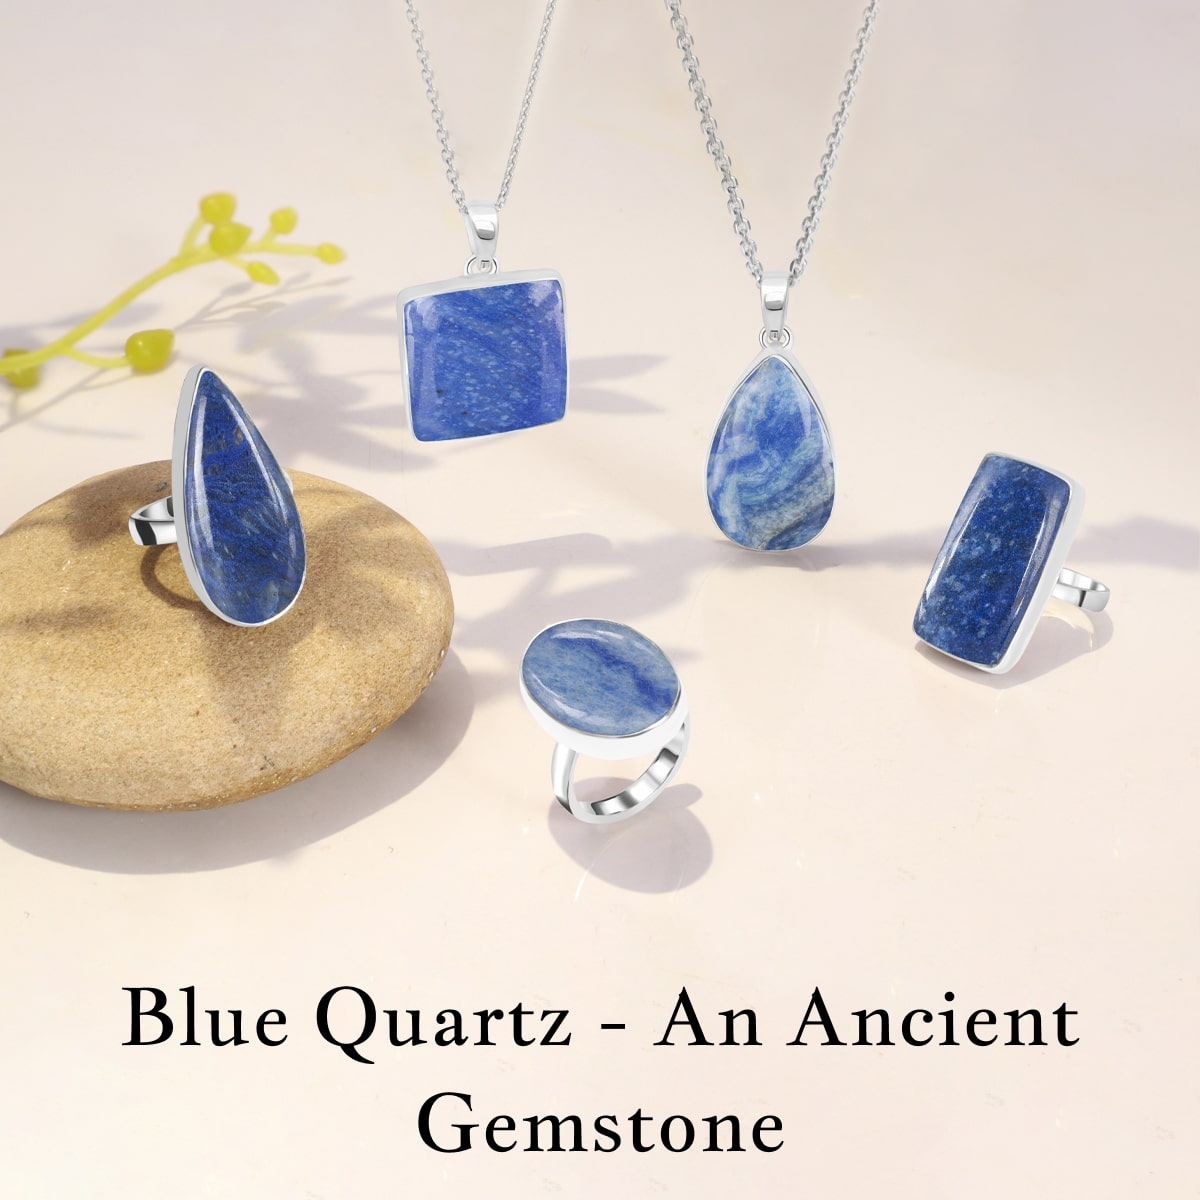 History of Blue Quartz Gem